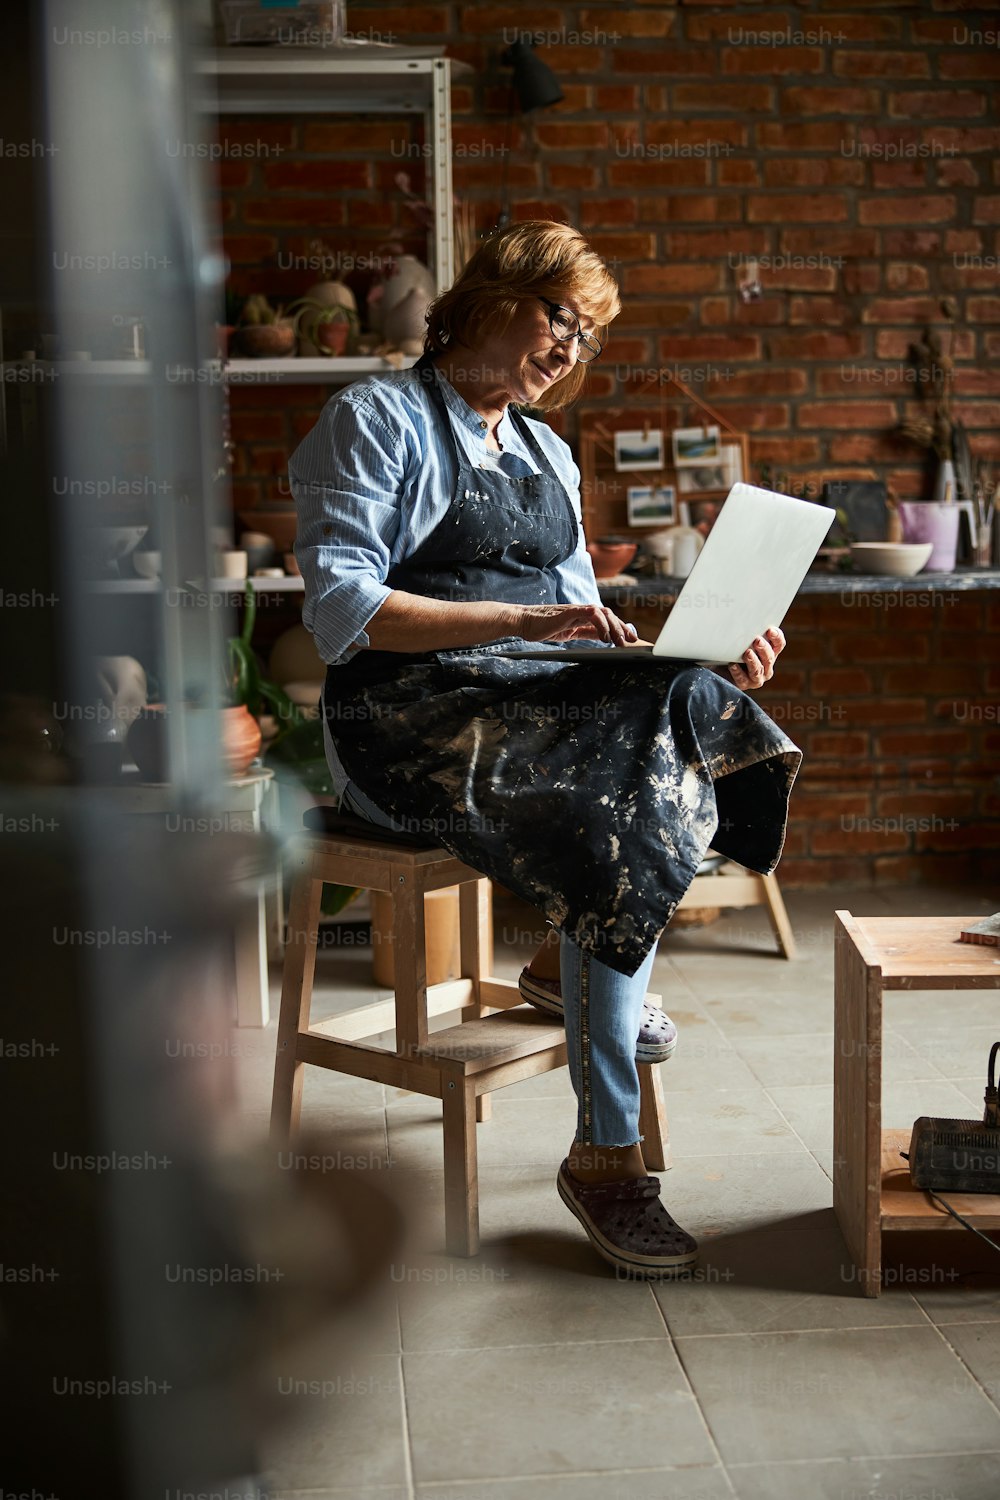 エプロンで魅力的な女性の陶芸家がラップトップのキーボードでタイピングし、陶器スタジオのスツールに座って微笑む